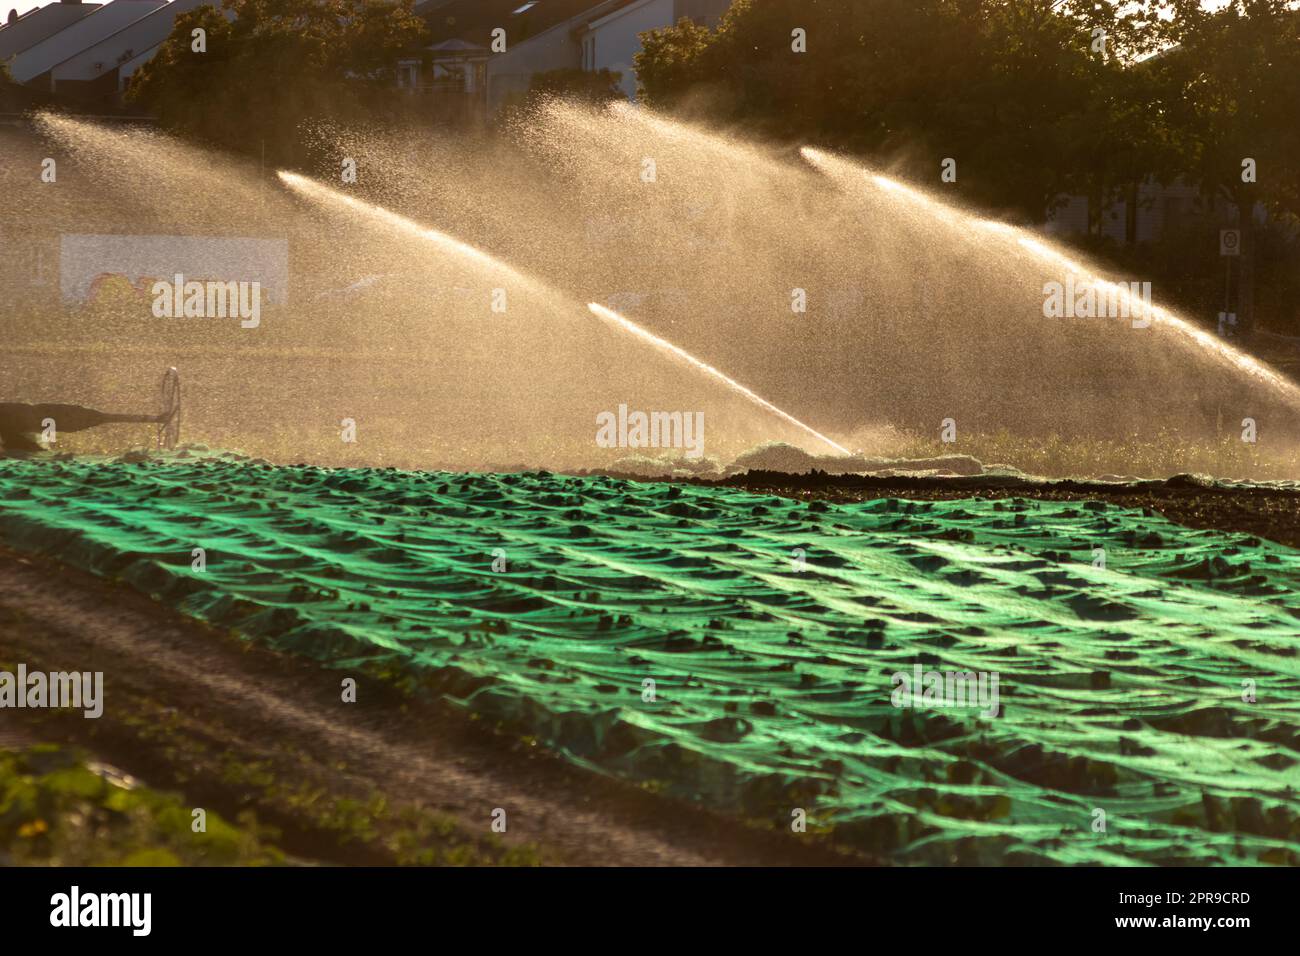 Il sistema di irrigazione agricola è necessario a causa delle calde estate e la siccità causata dai cambiamenti climatici minaccia l'agricoltura e l'agricoltura con il clima secco e l'assenza di precipitazioni gonfiano i prezzi del raccolto Foto Stock